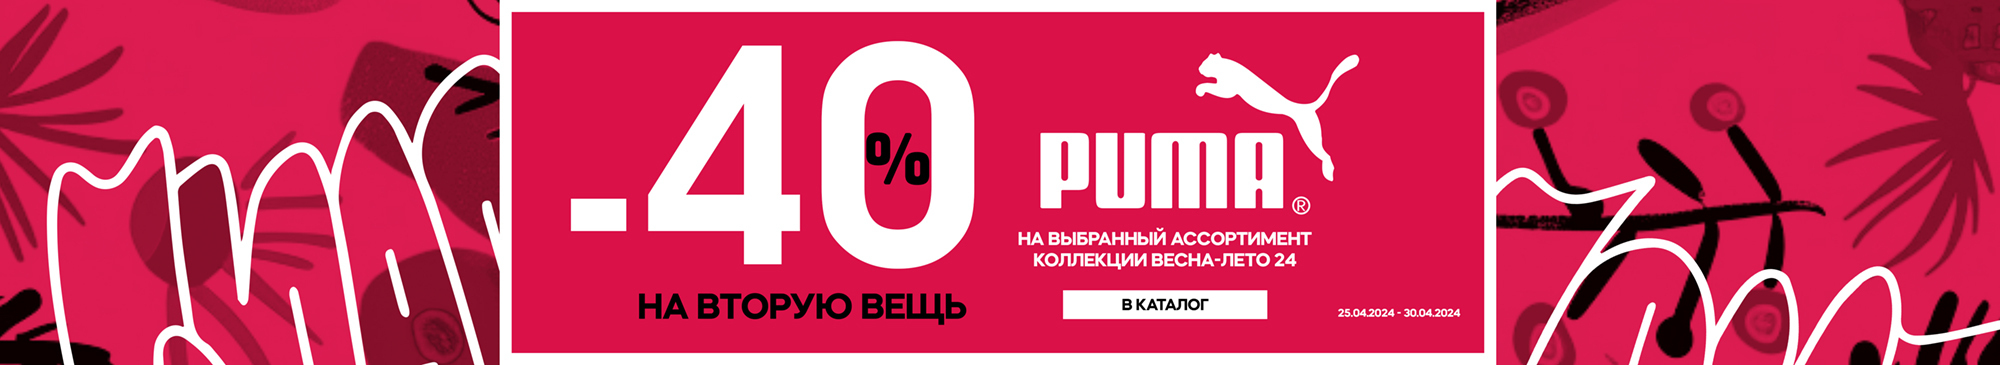 -40% во вторую вещь Puma - MEGASPORT